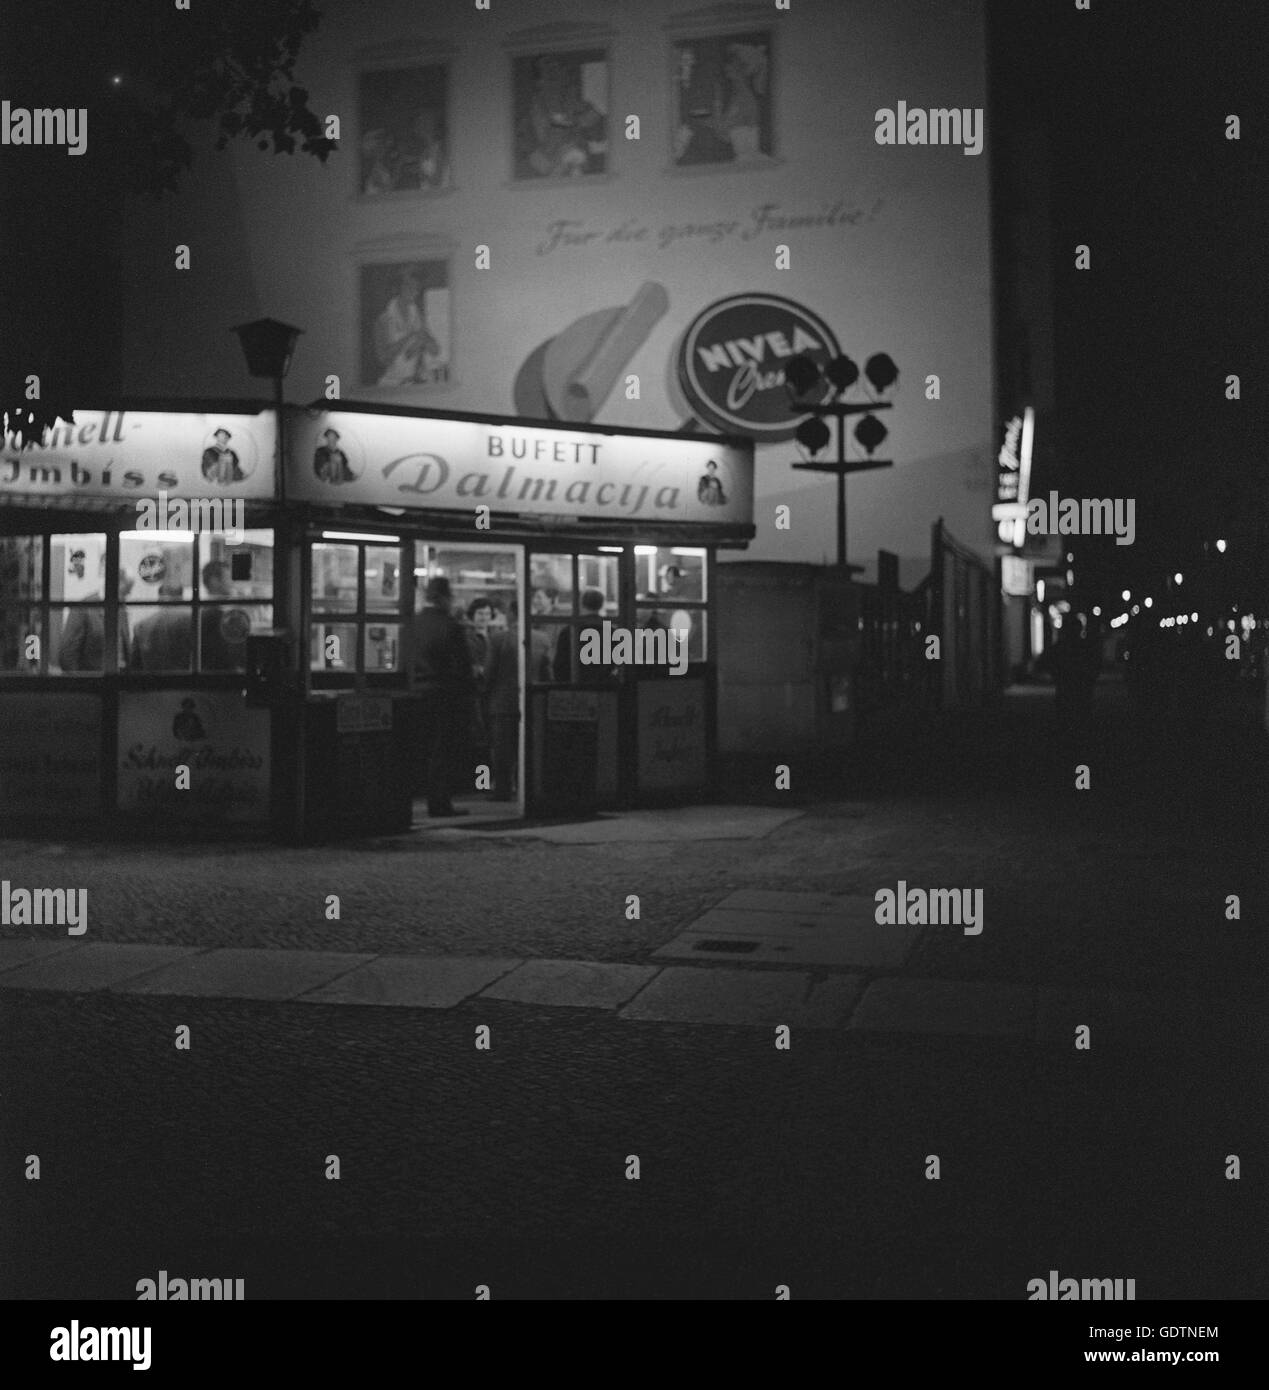 'Dalmacija' diner in Berlin, 1964 Stock Photo - Alamy